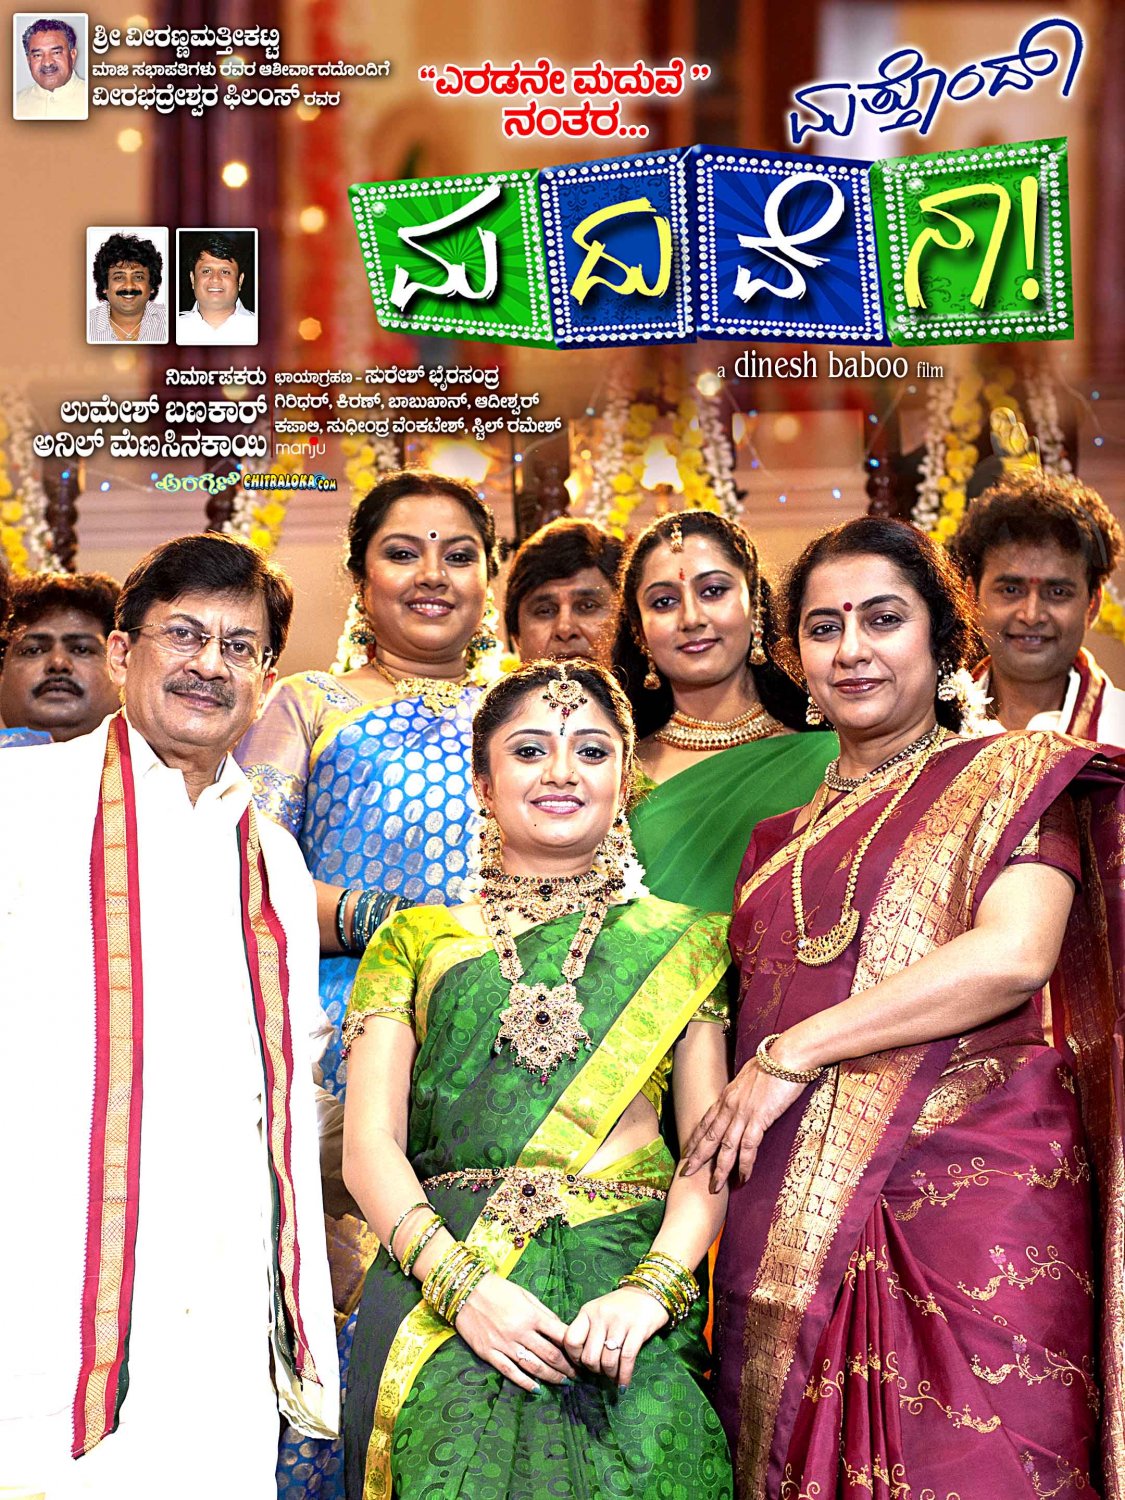 Extra Large Movie Poster Image for Mathondu Madhuvena (#13 of 15)